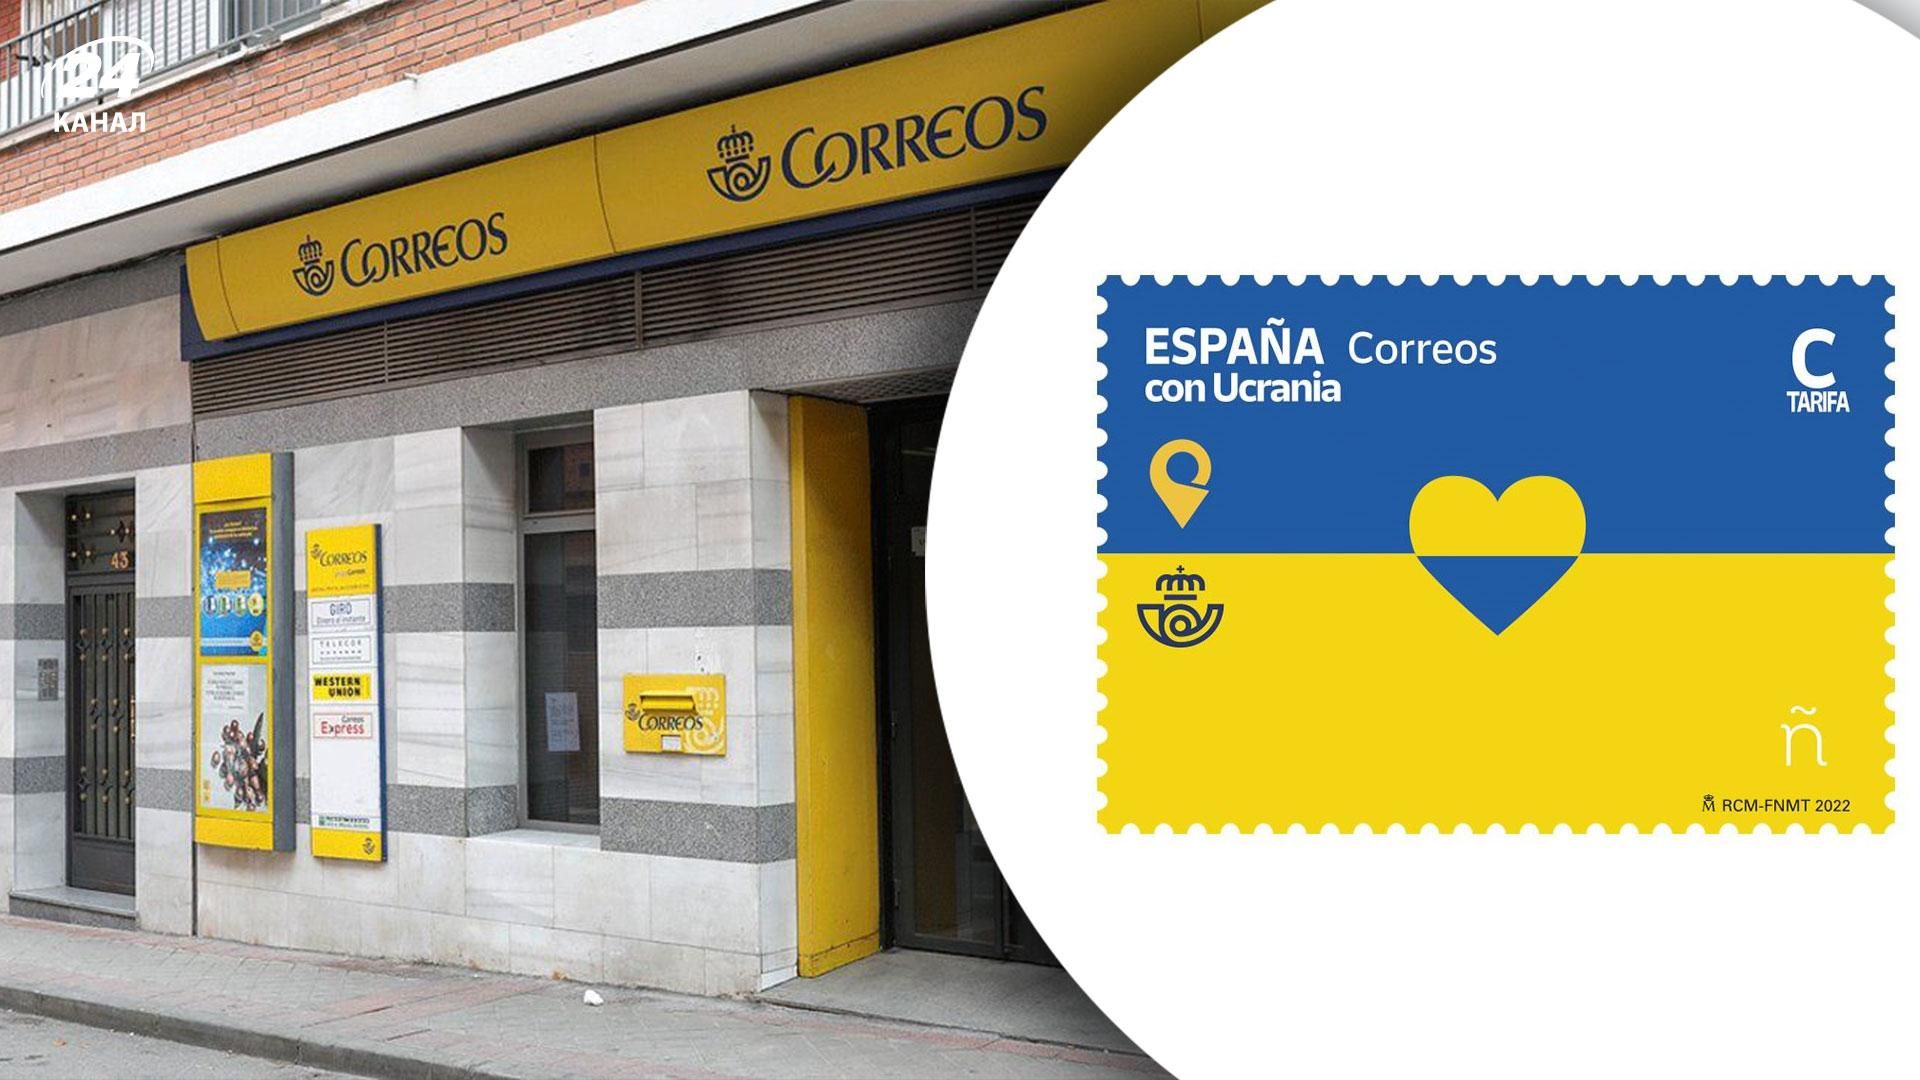 Іспанська пошта випустила марку "Іспанія з Україною"